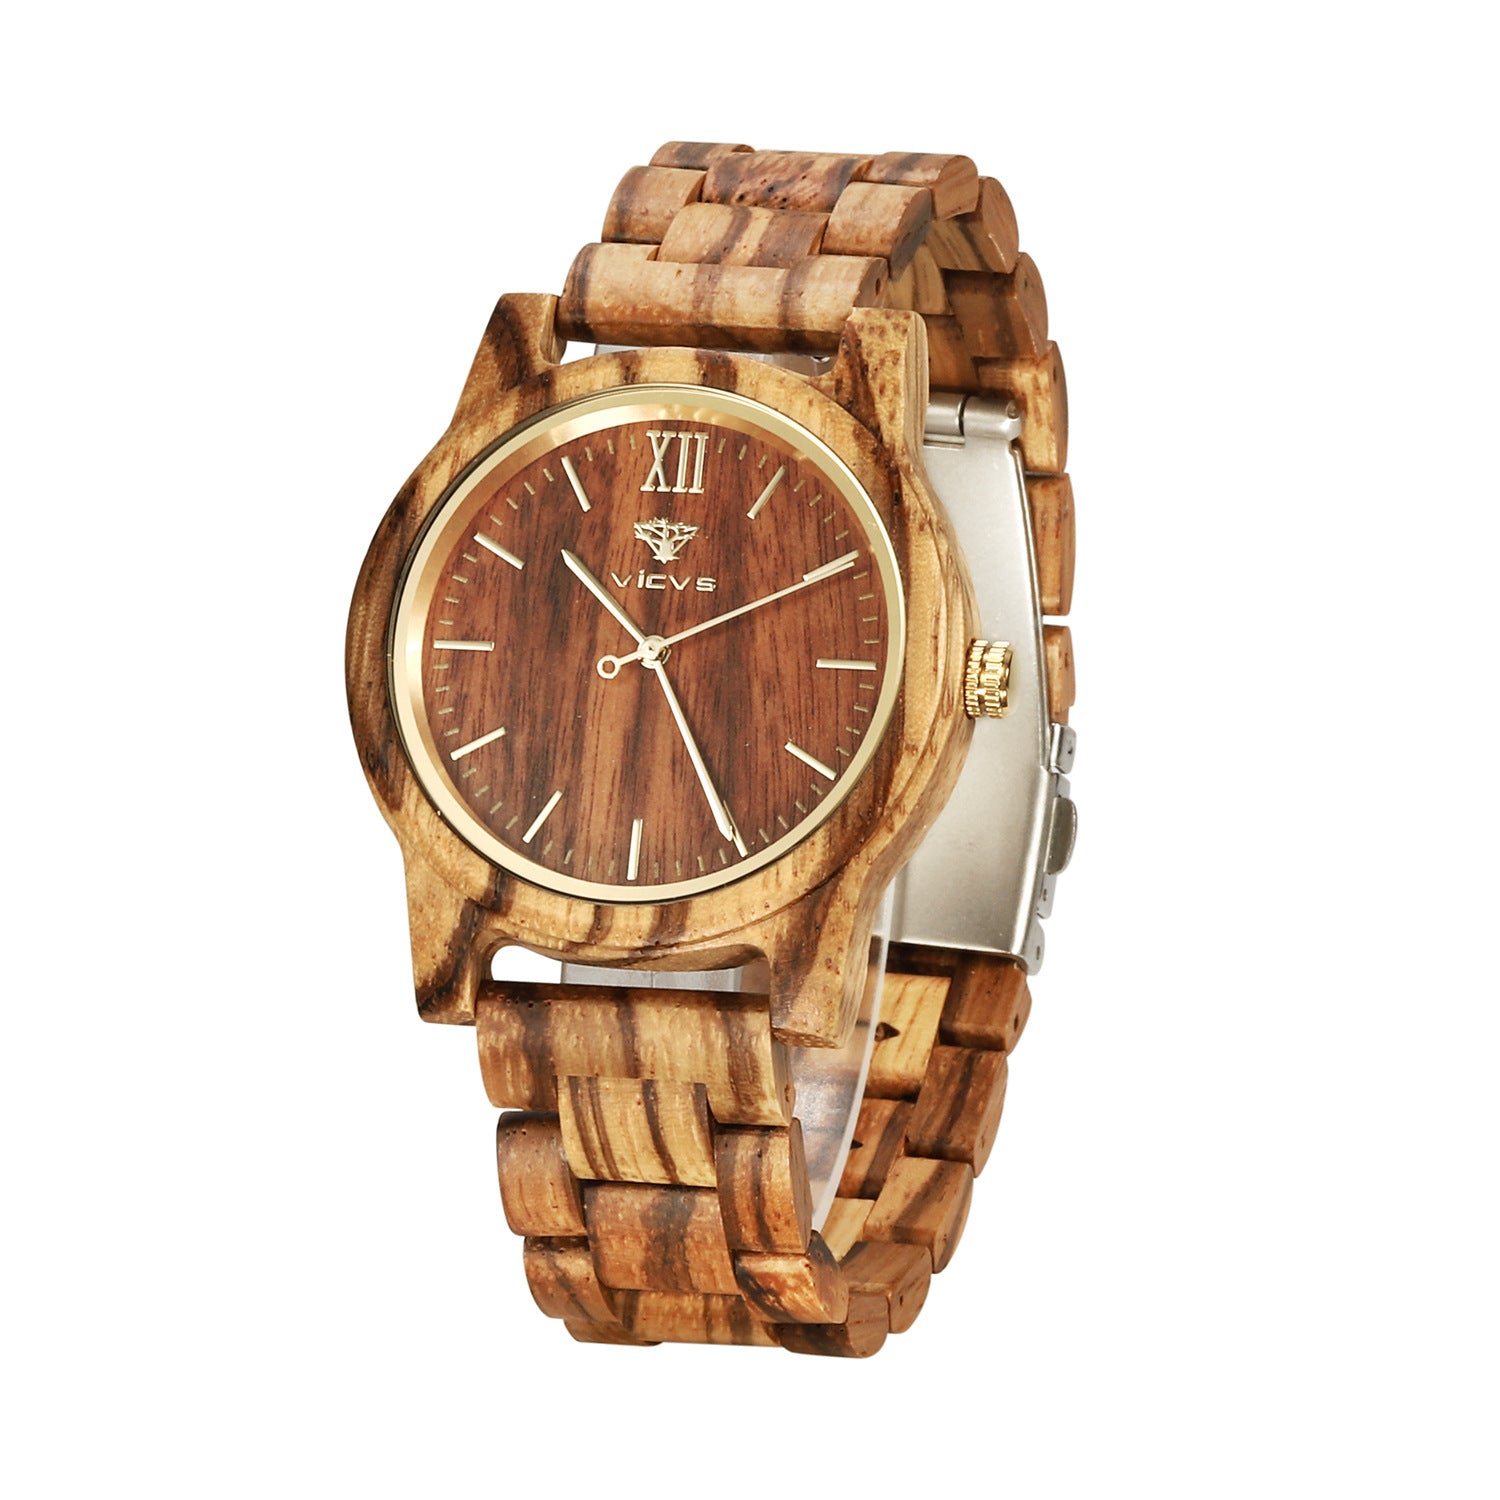 Wooden quartz watch - Zebra fashion